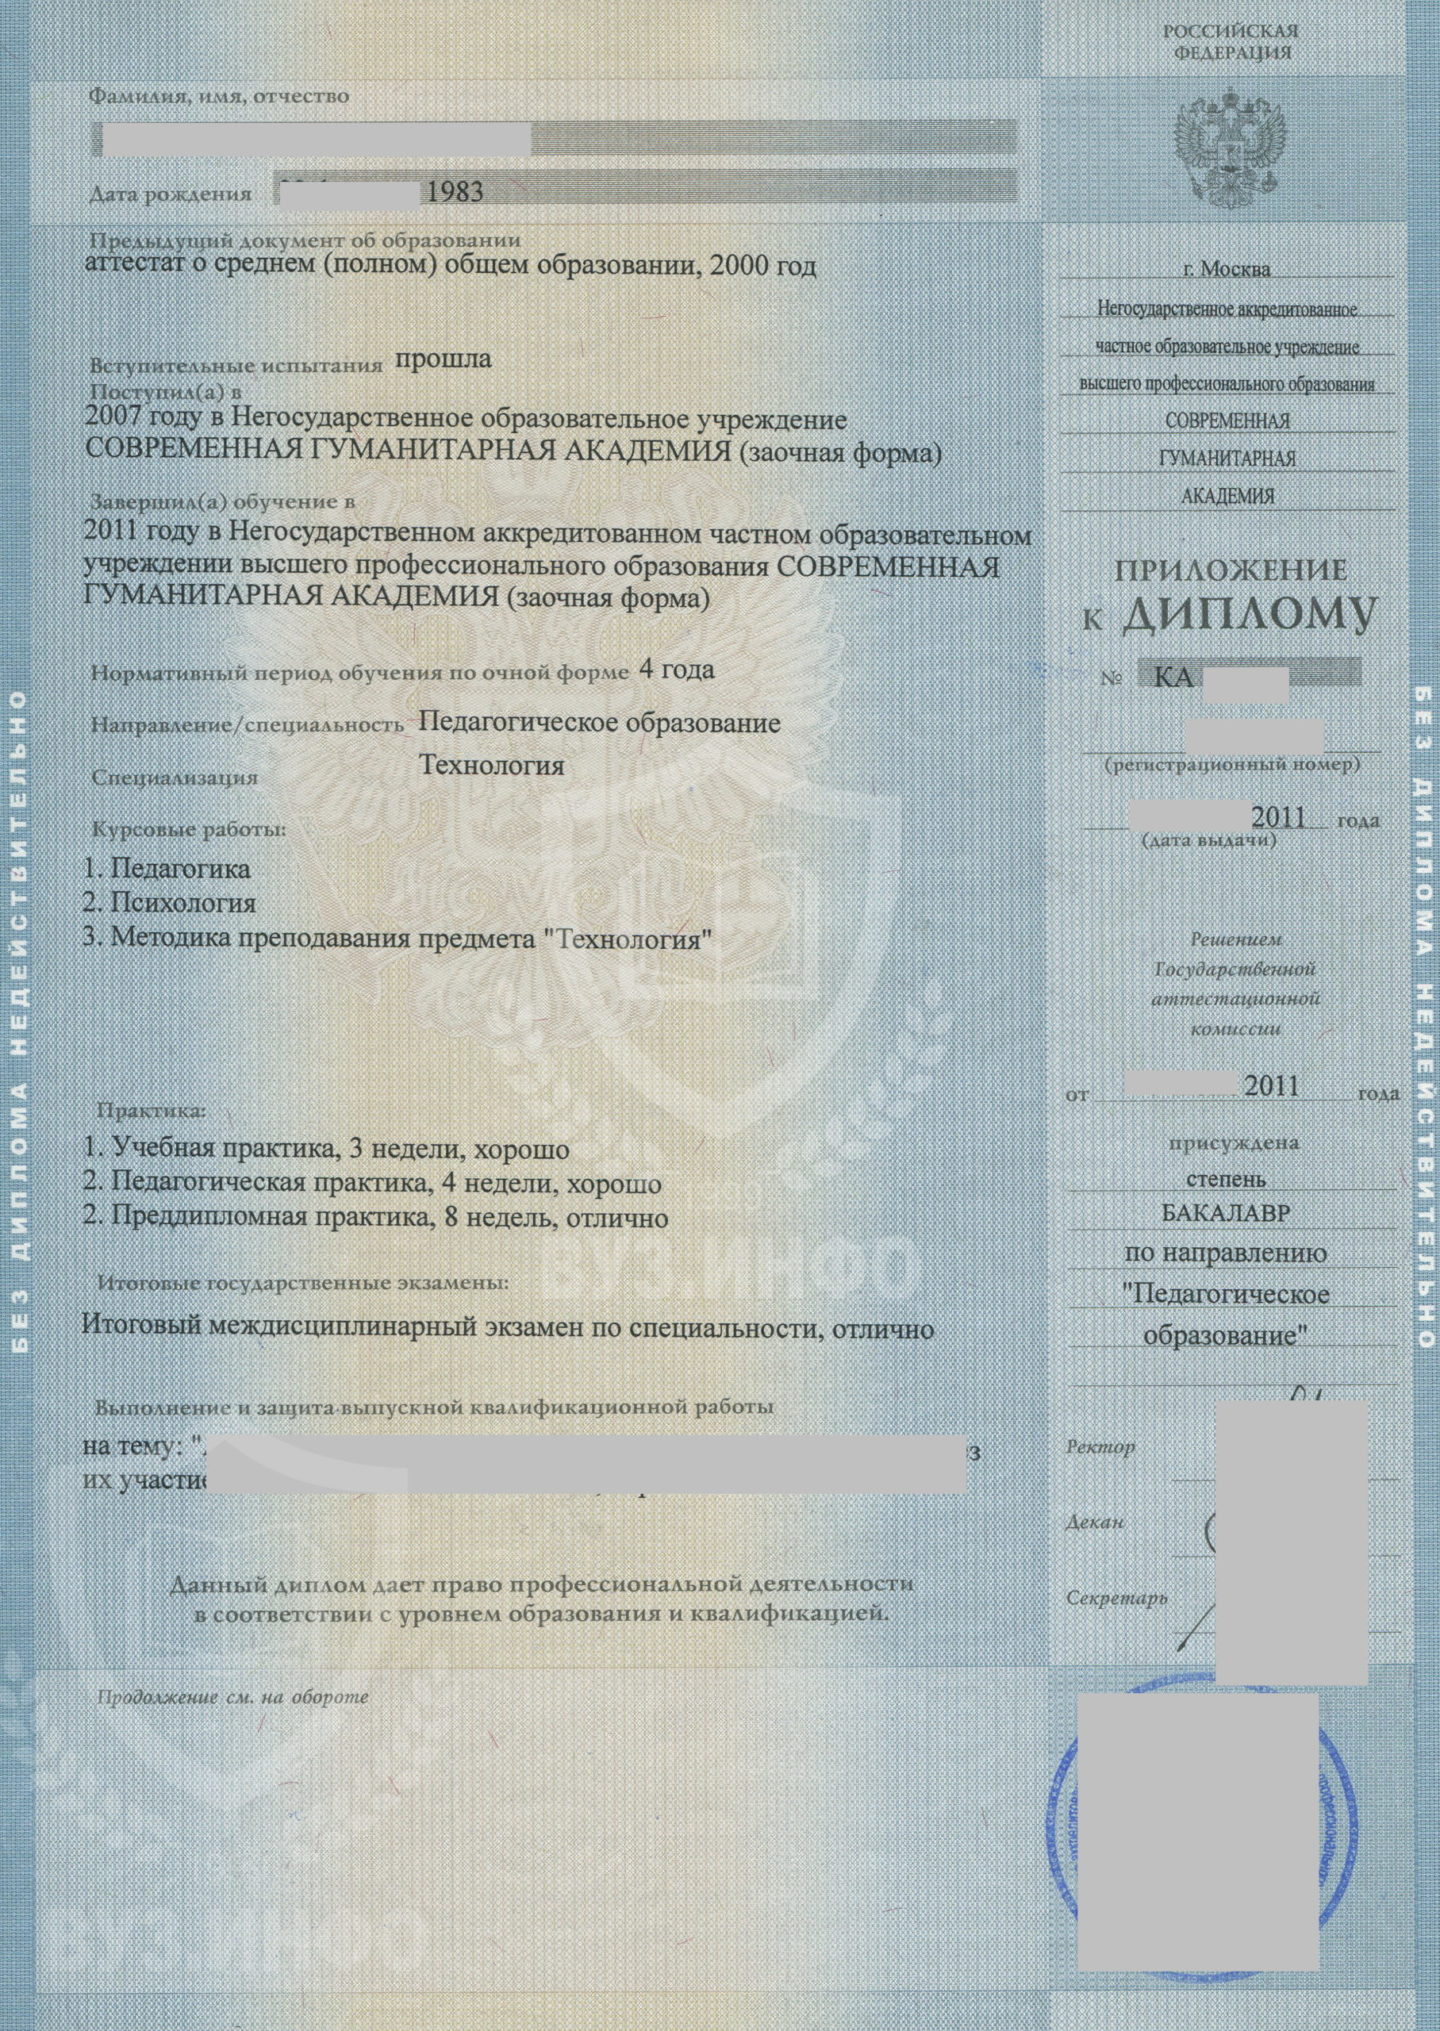 Приложение диплома бакалавра 2011 года по специальности Педагогическое образование, НОЧУ ВПО СГА